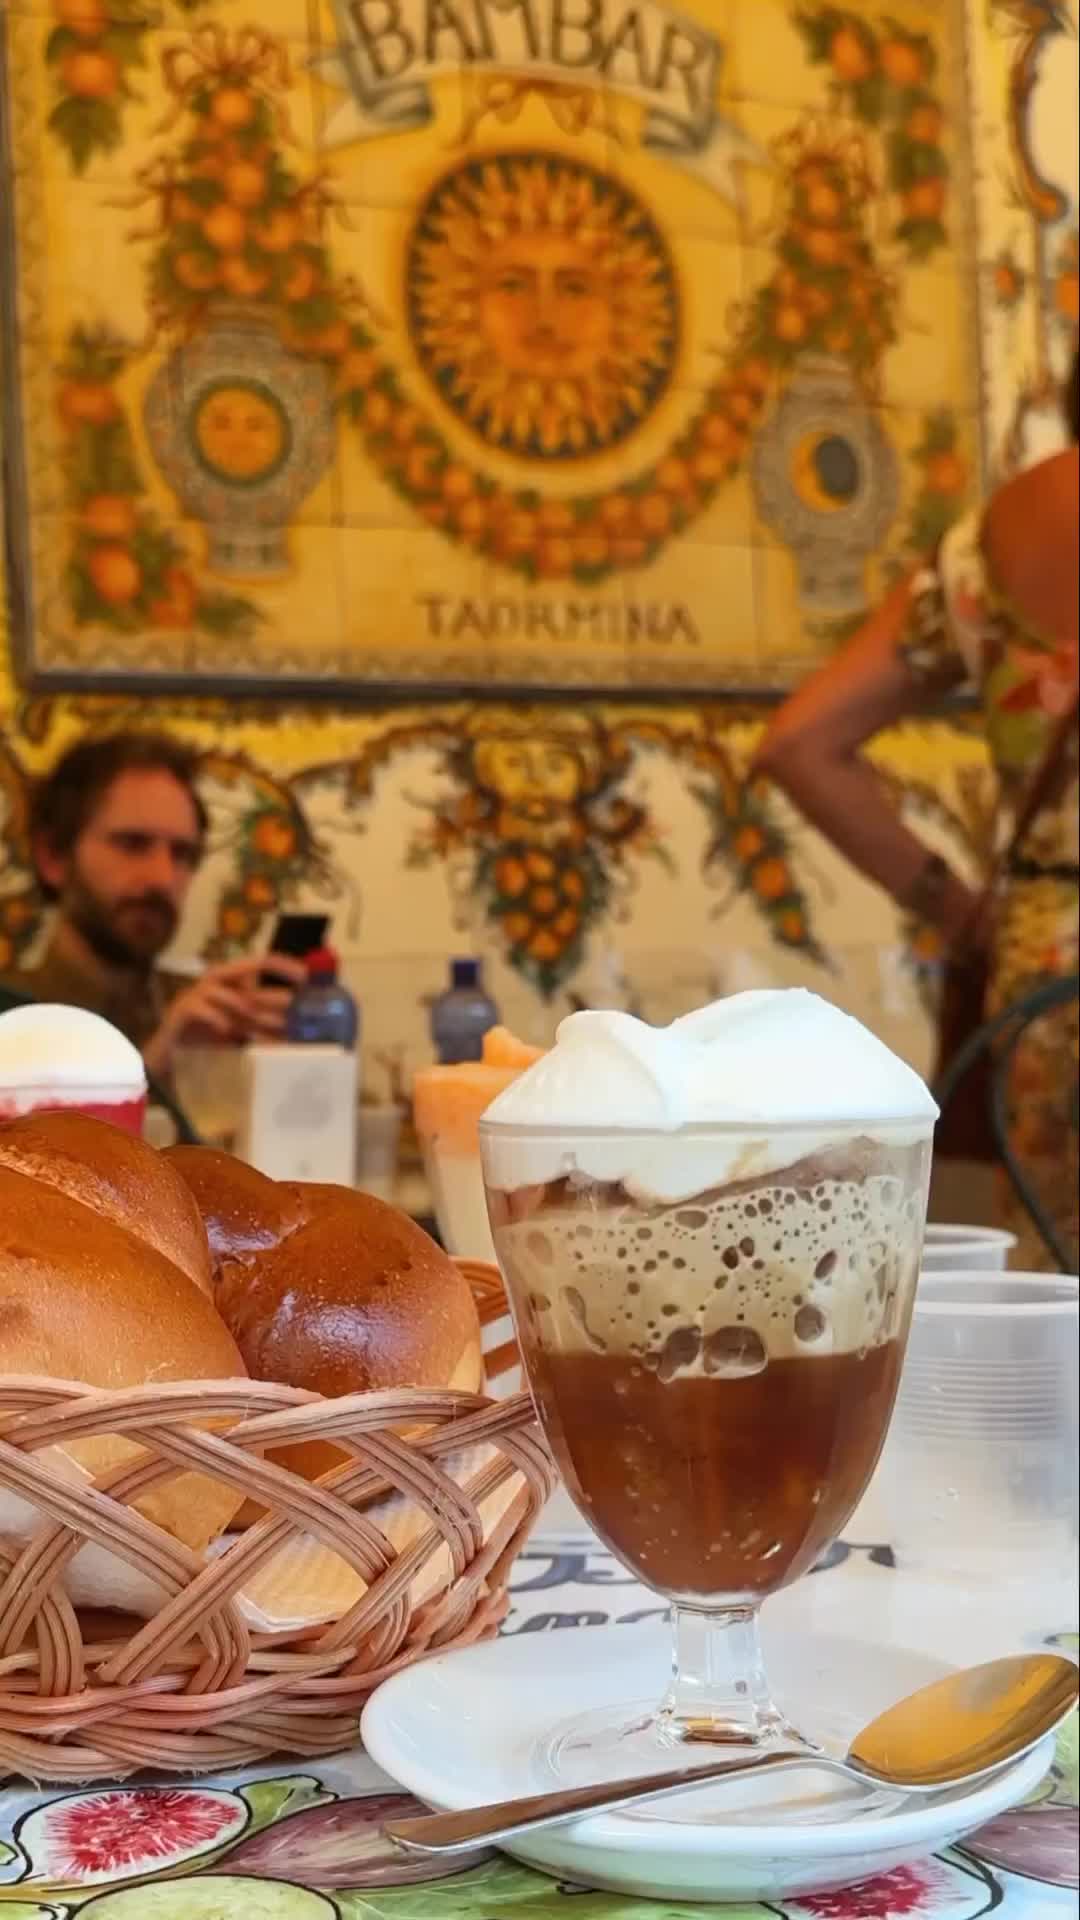 Enjoy Granita Caffè e Panna at Bam Bar, Taormina